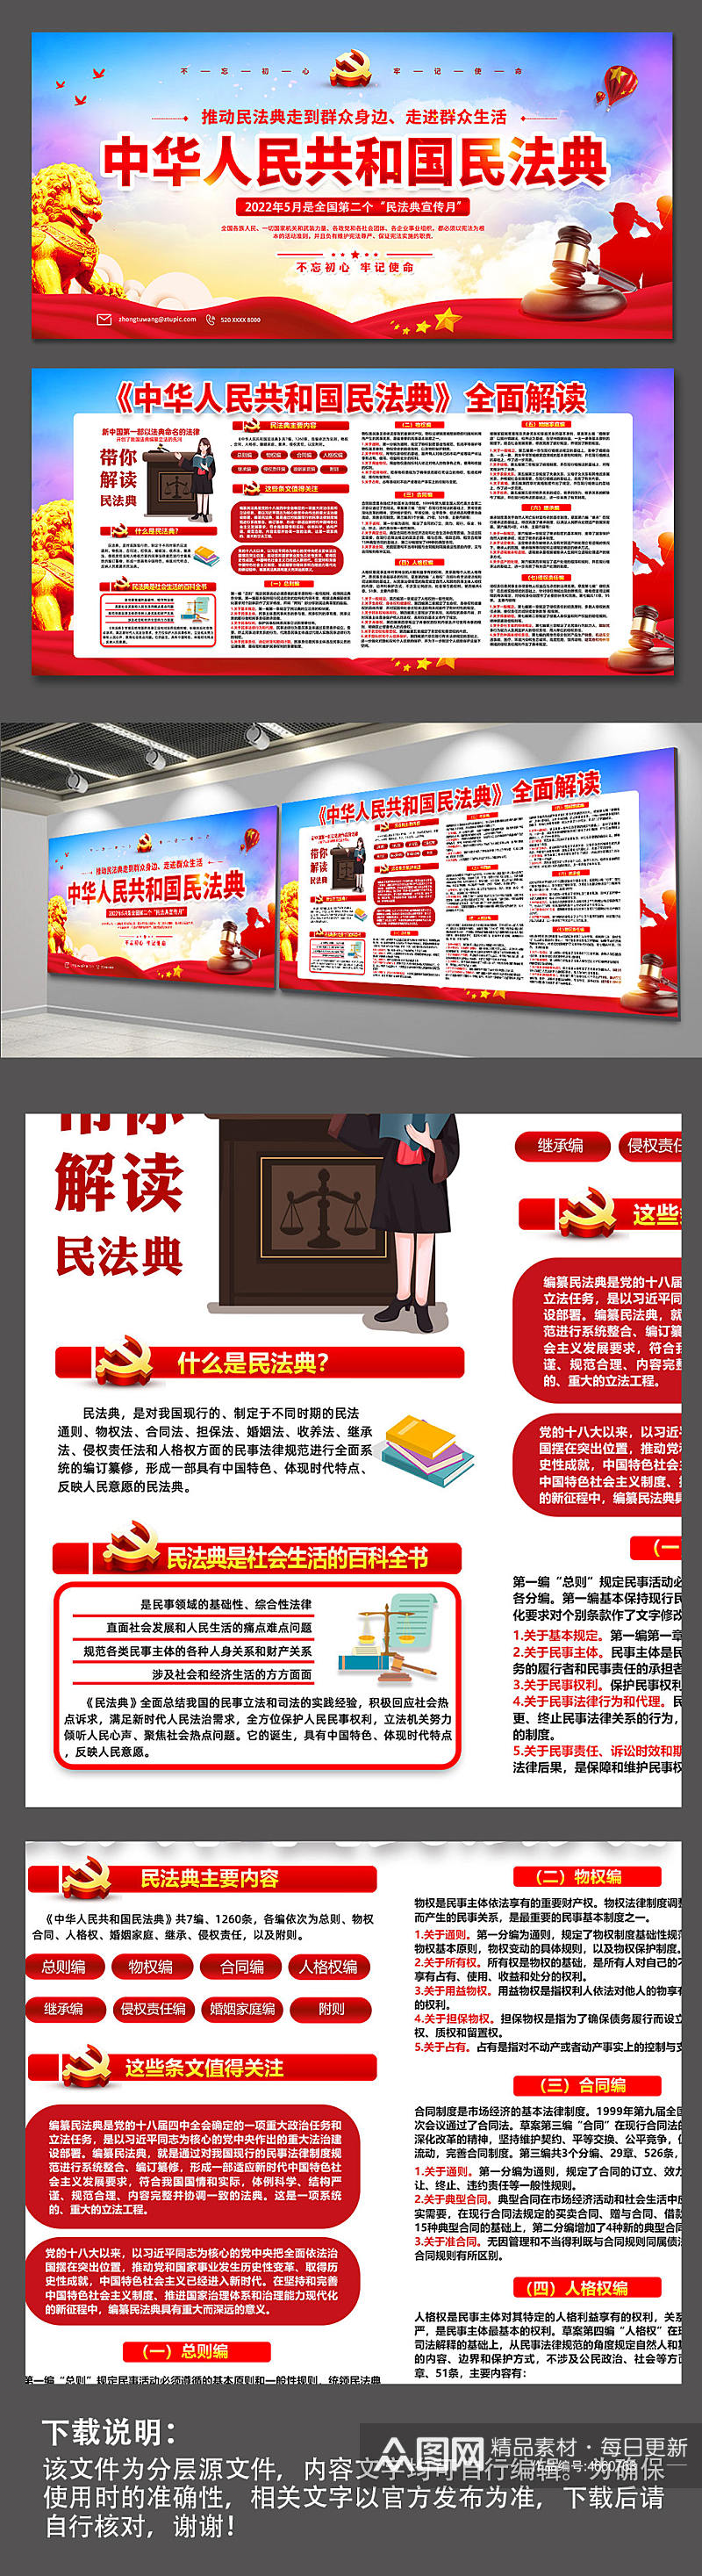 民法典法治全民普法宣传党建展板宣传栏海报素材